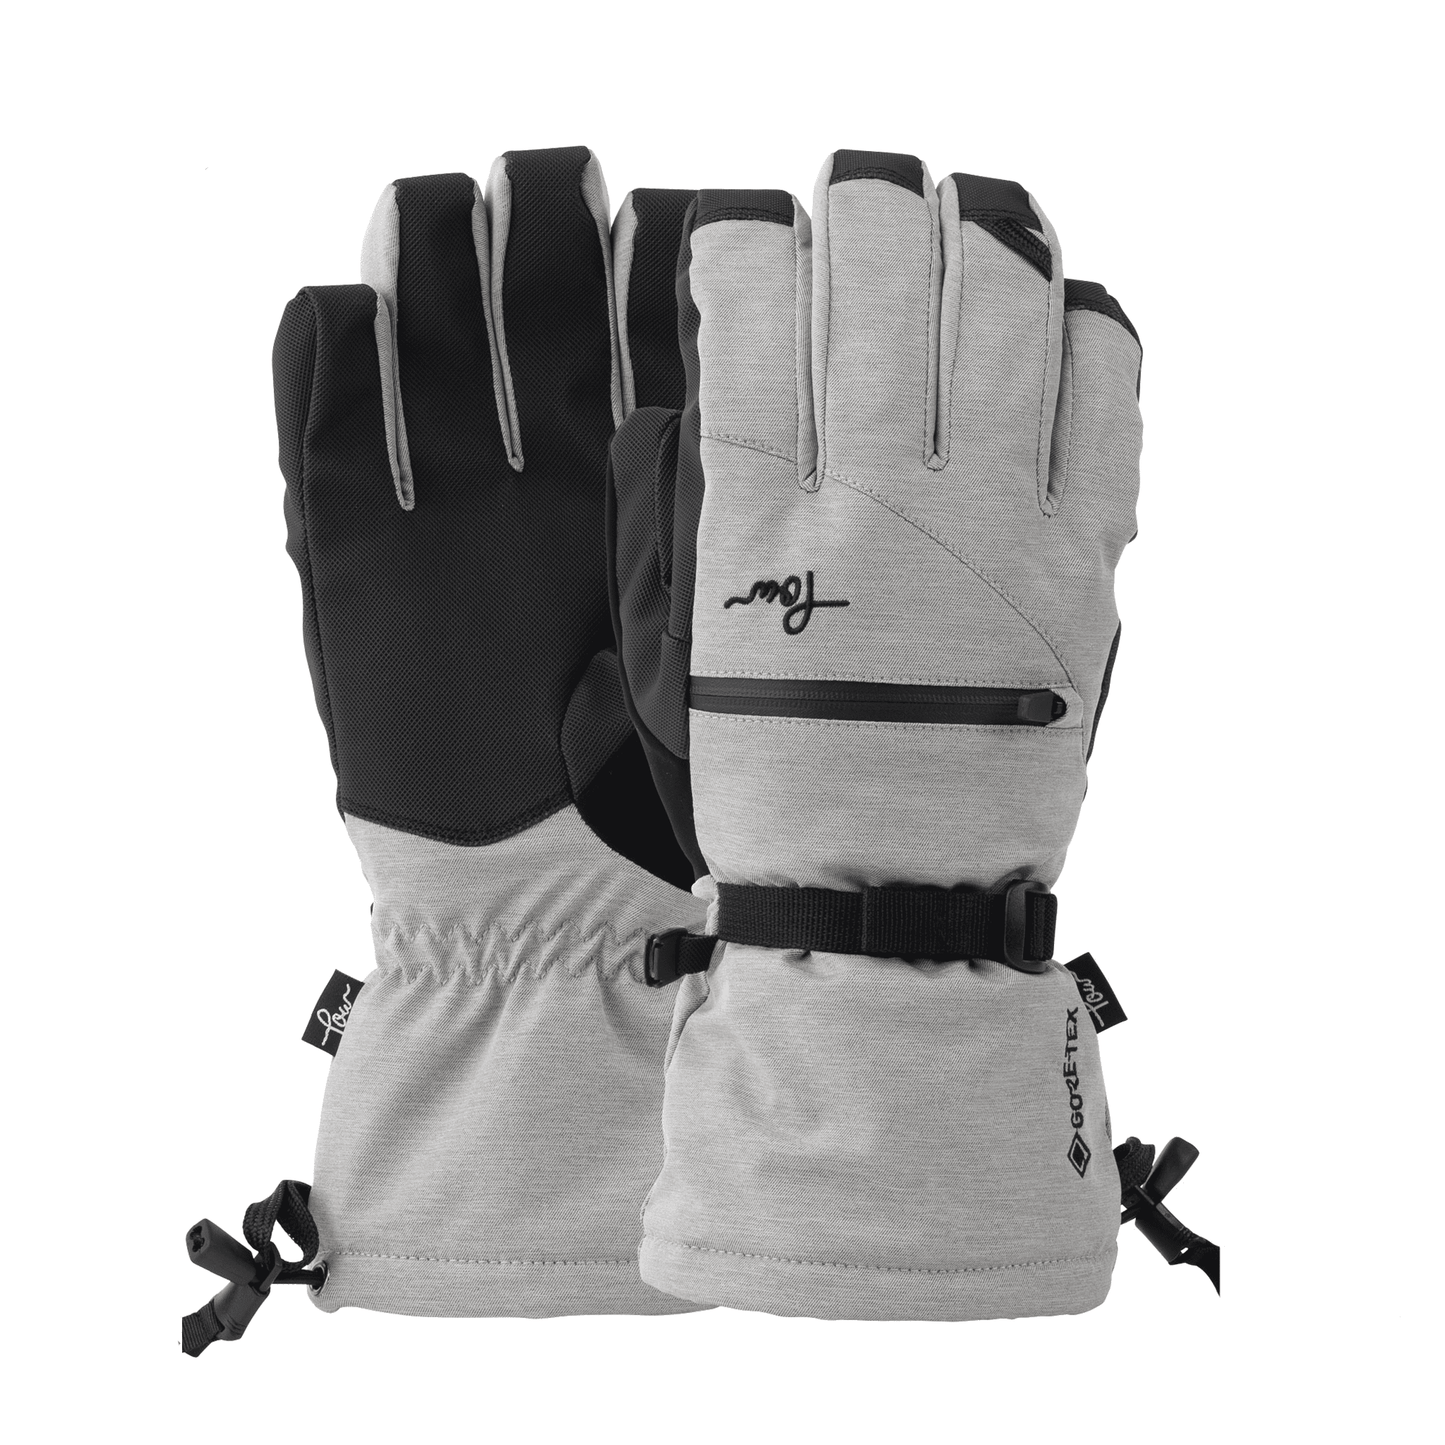 POW Gloves - Cascadia Women's Ski / Snowboard Glove Long Cuff